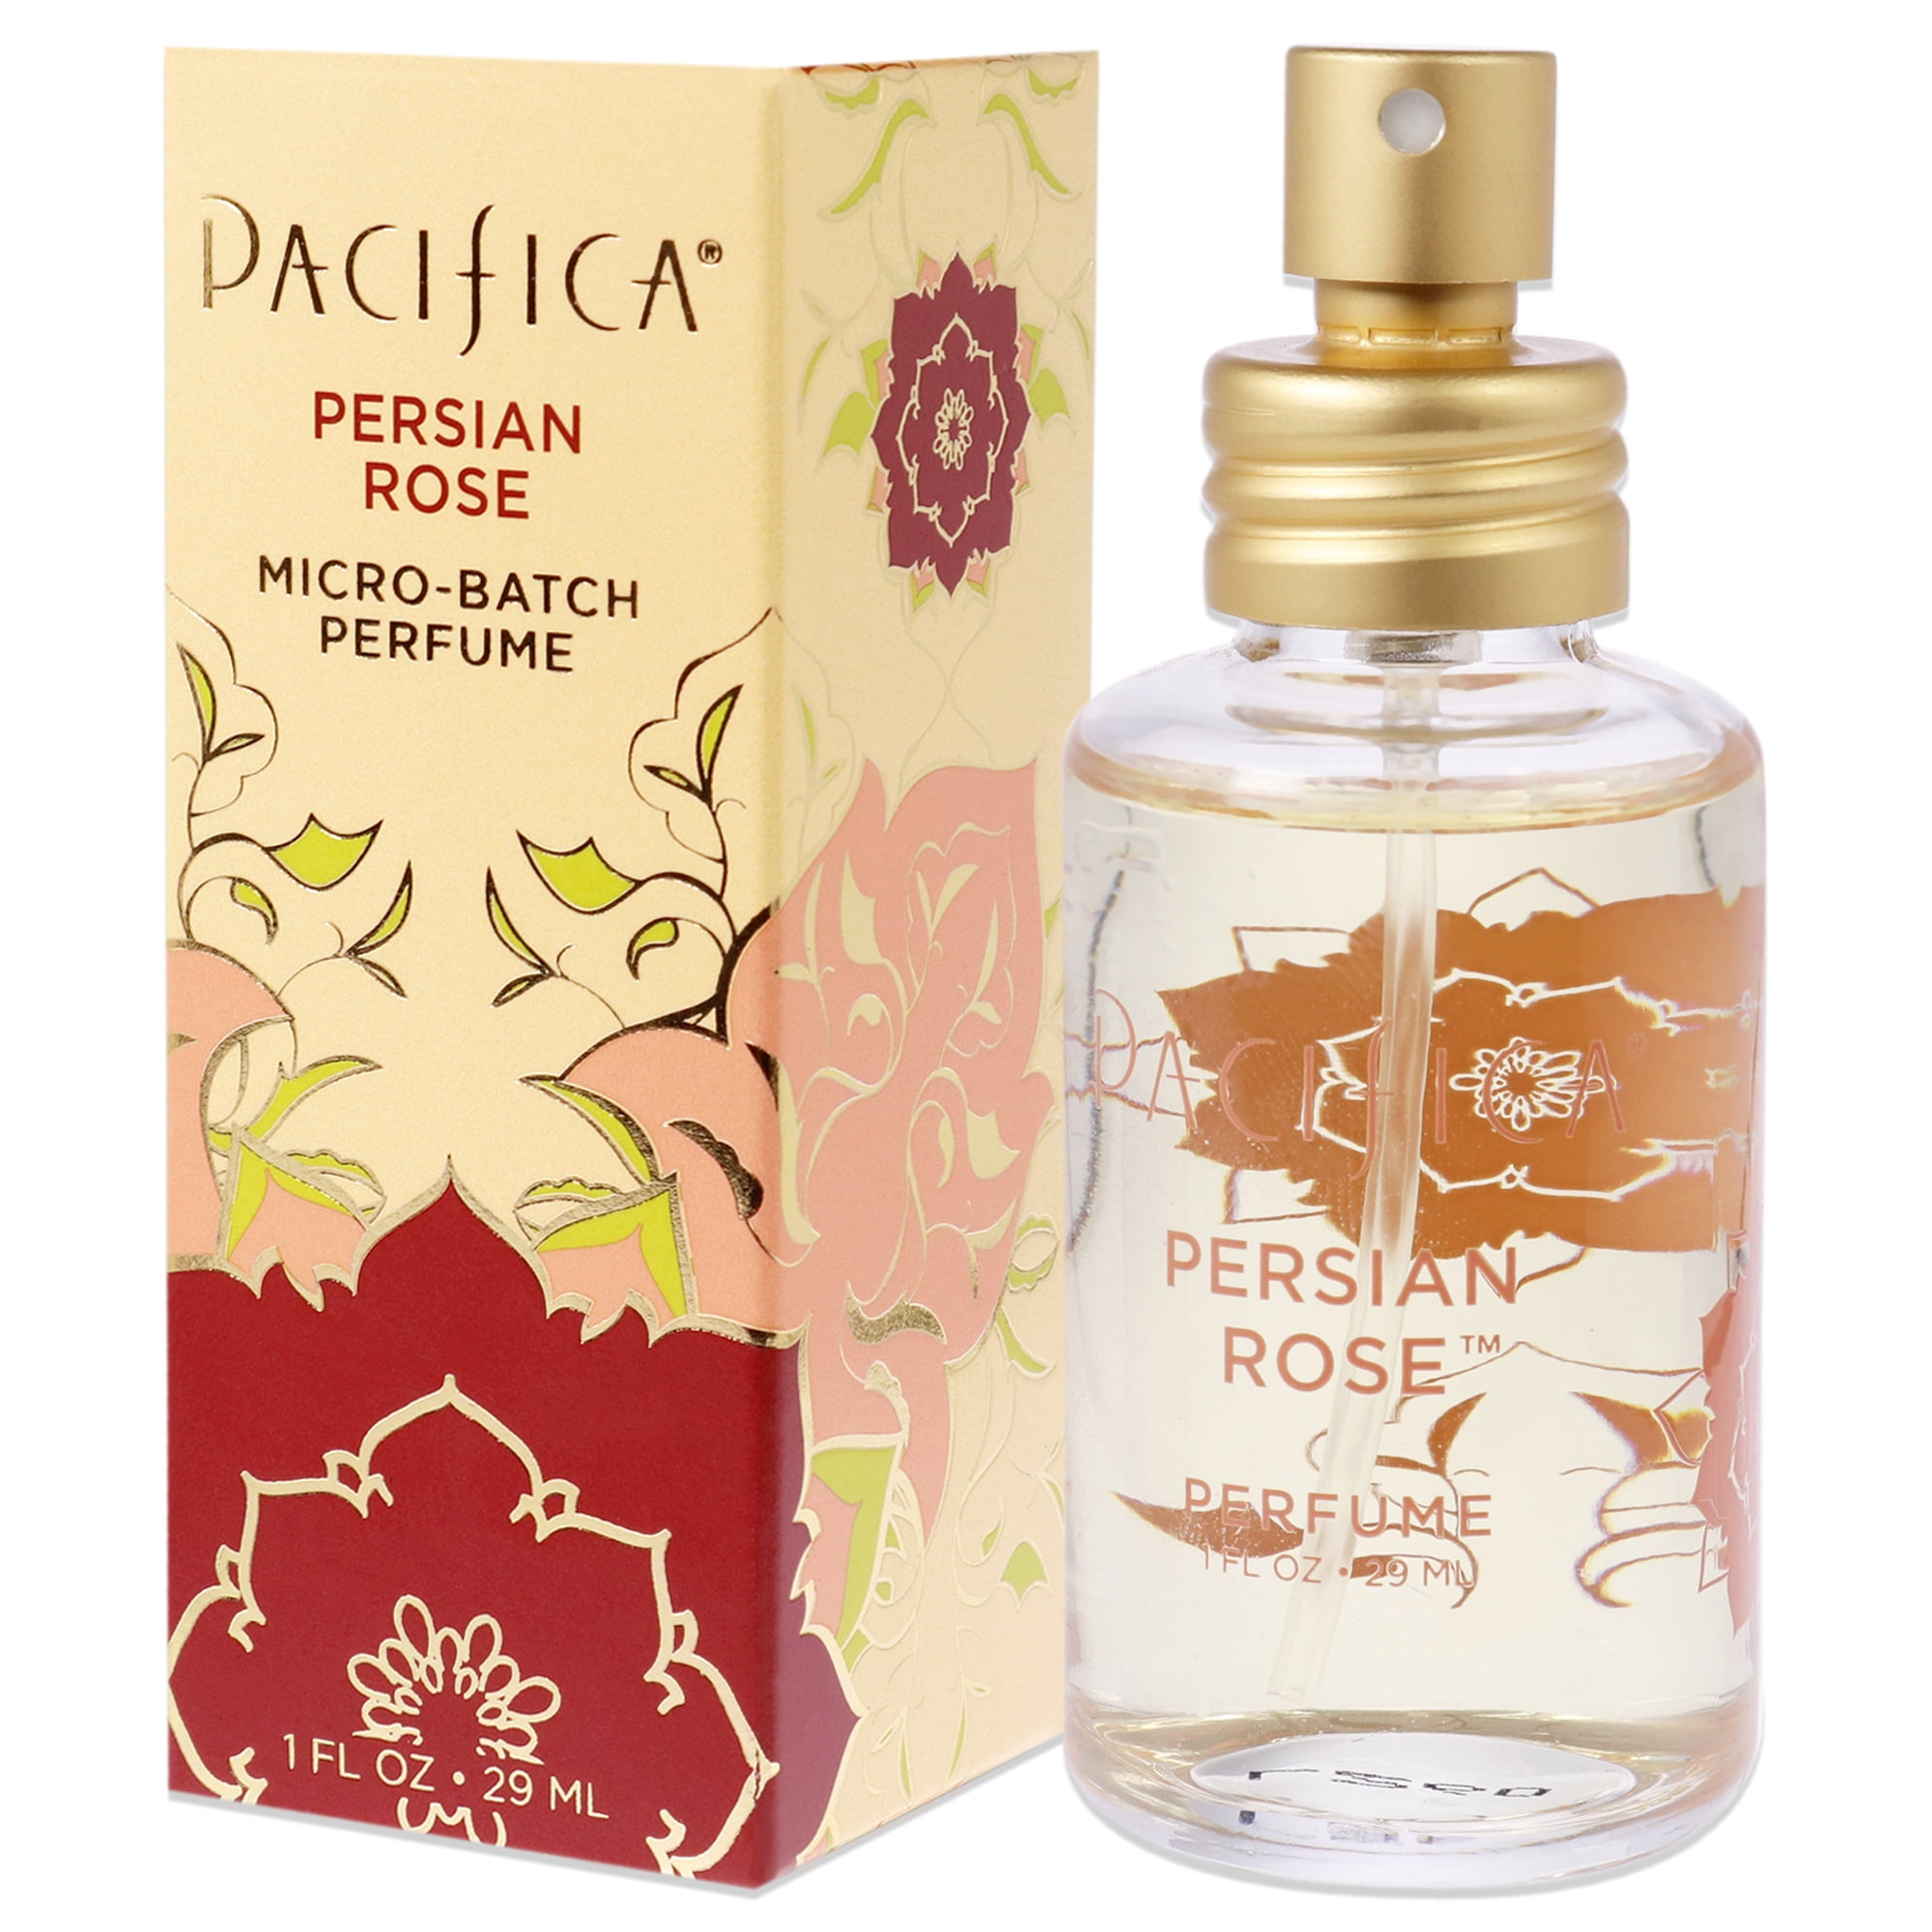 Pacifica Persian Rose Perfume, 1 oz Perfume Spray